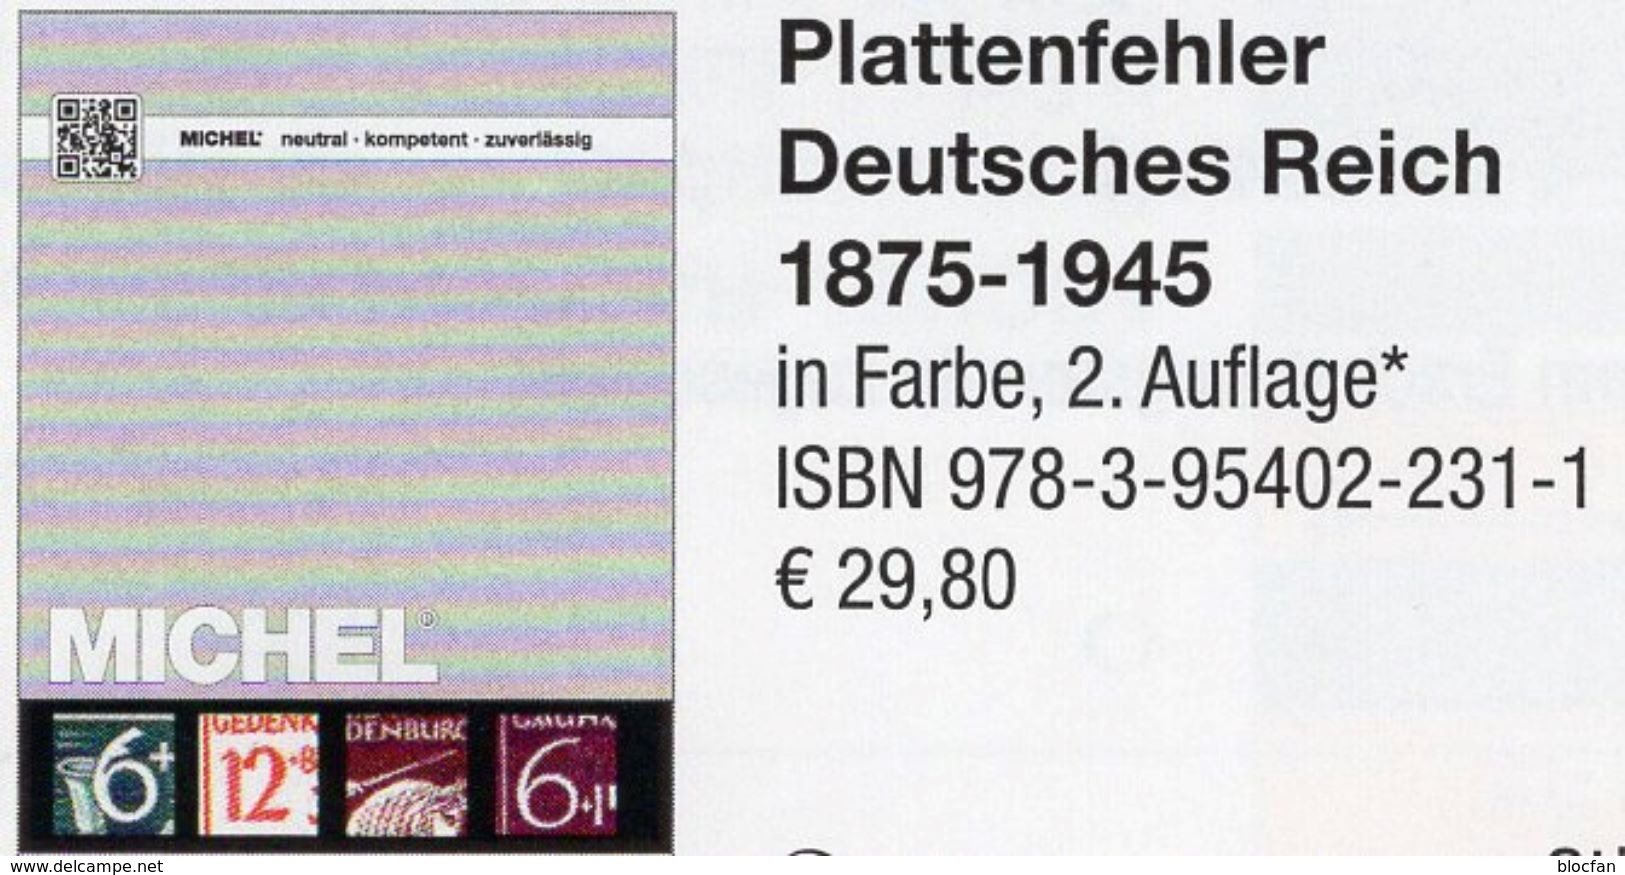 MlCHEL Deutsche Reich 1875-1945 Plattenfehler 2018 Neu 30€ D Kaiserreich DR 3.Reich Error Special Catalogue Germany - Enciclopedias